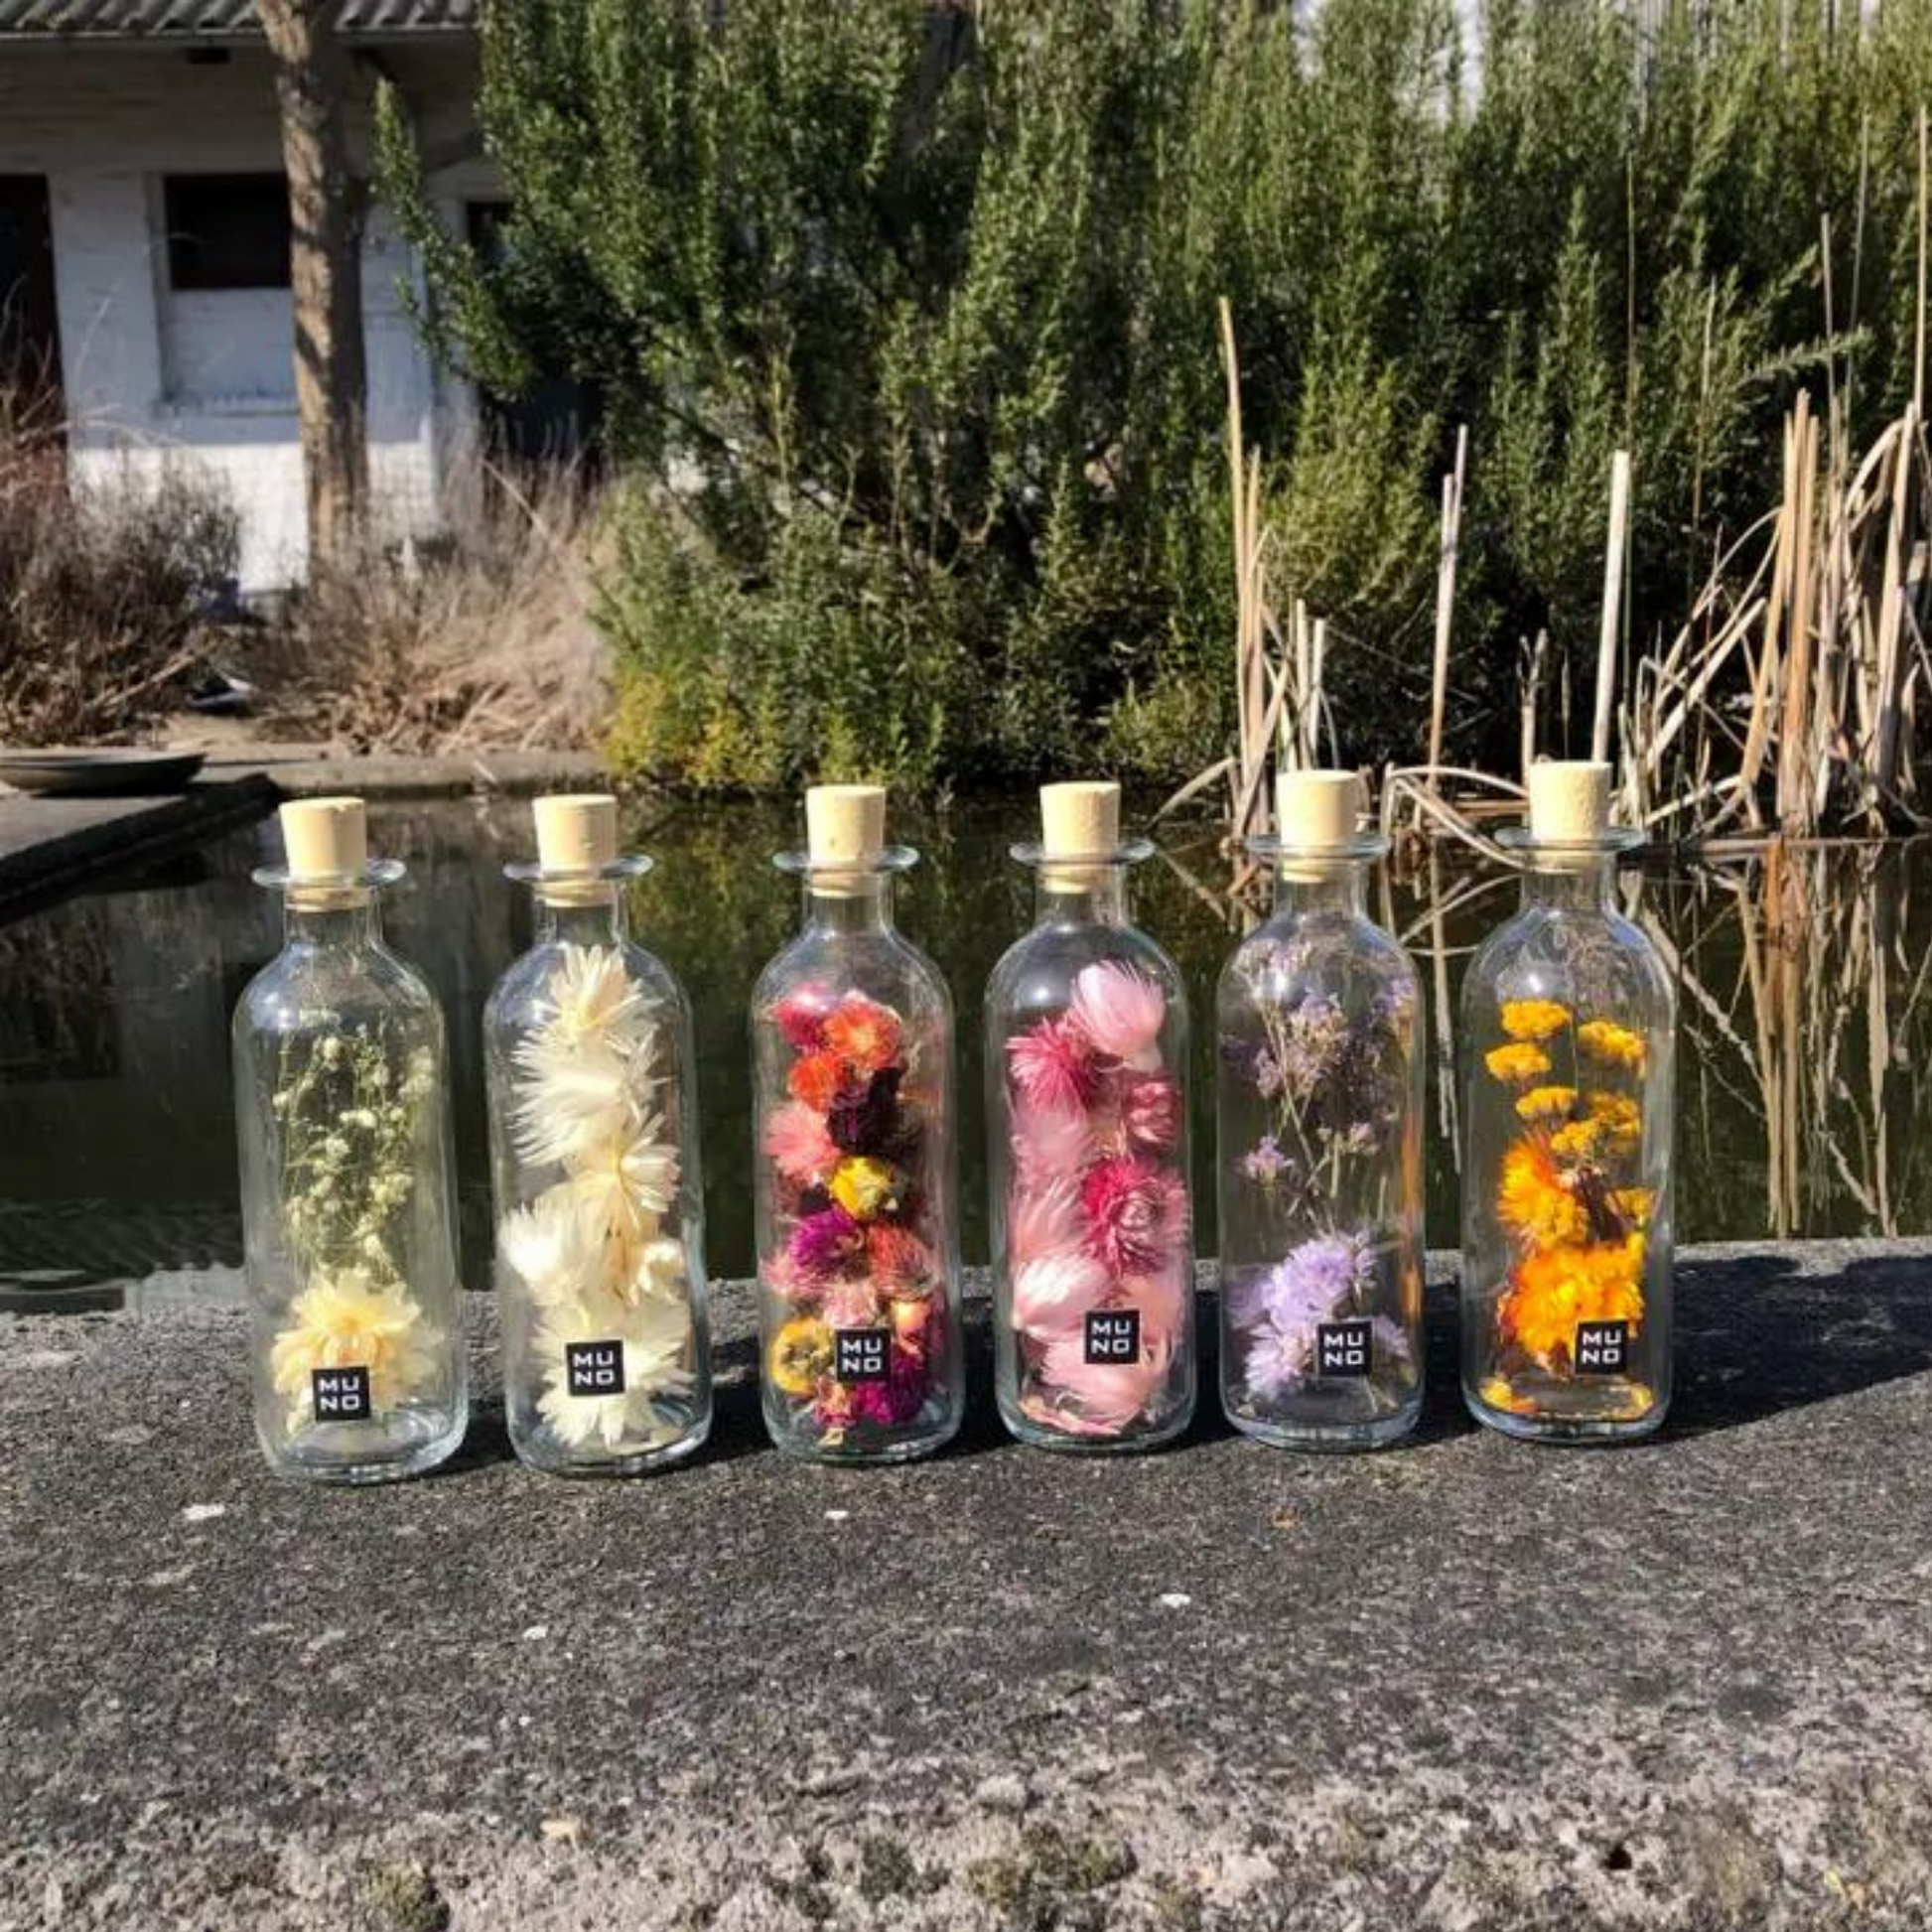 Dried Flowers - Unique Decorative Bottle - Sprigbox